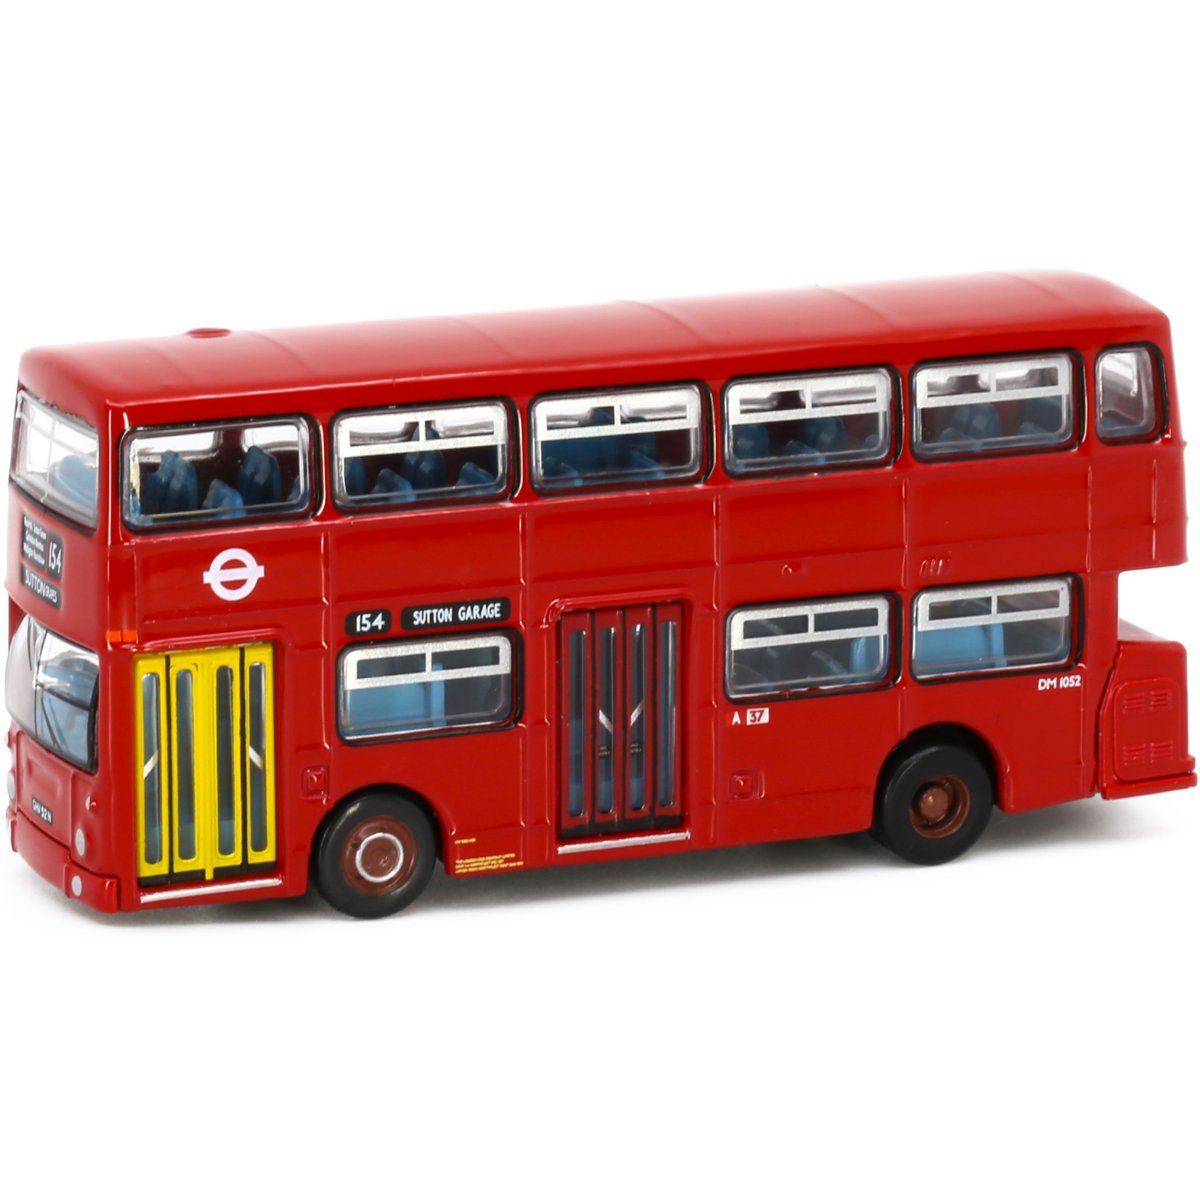 Tiny Models Daimler Fleetline DMS 154 London Transport (1:110 Scale) - Phillips Hobbies